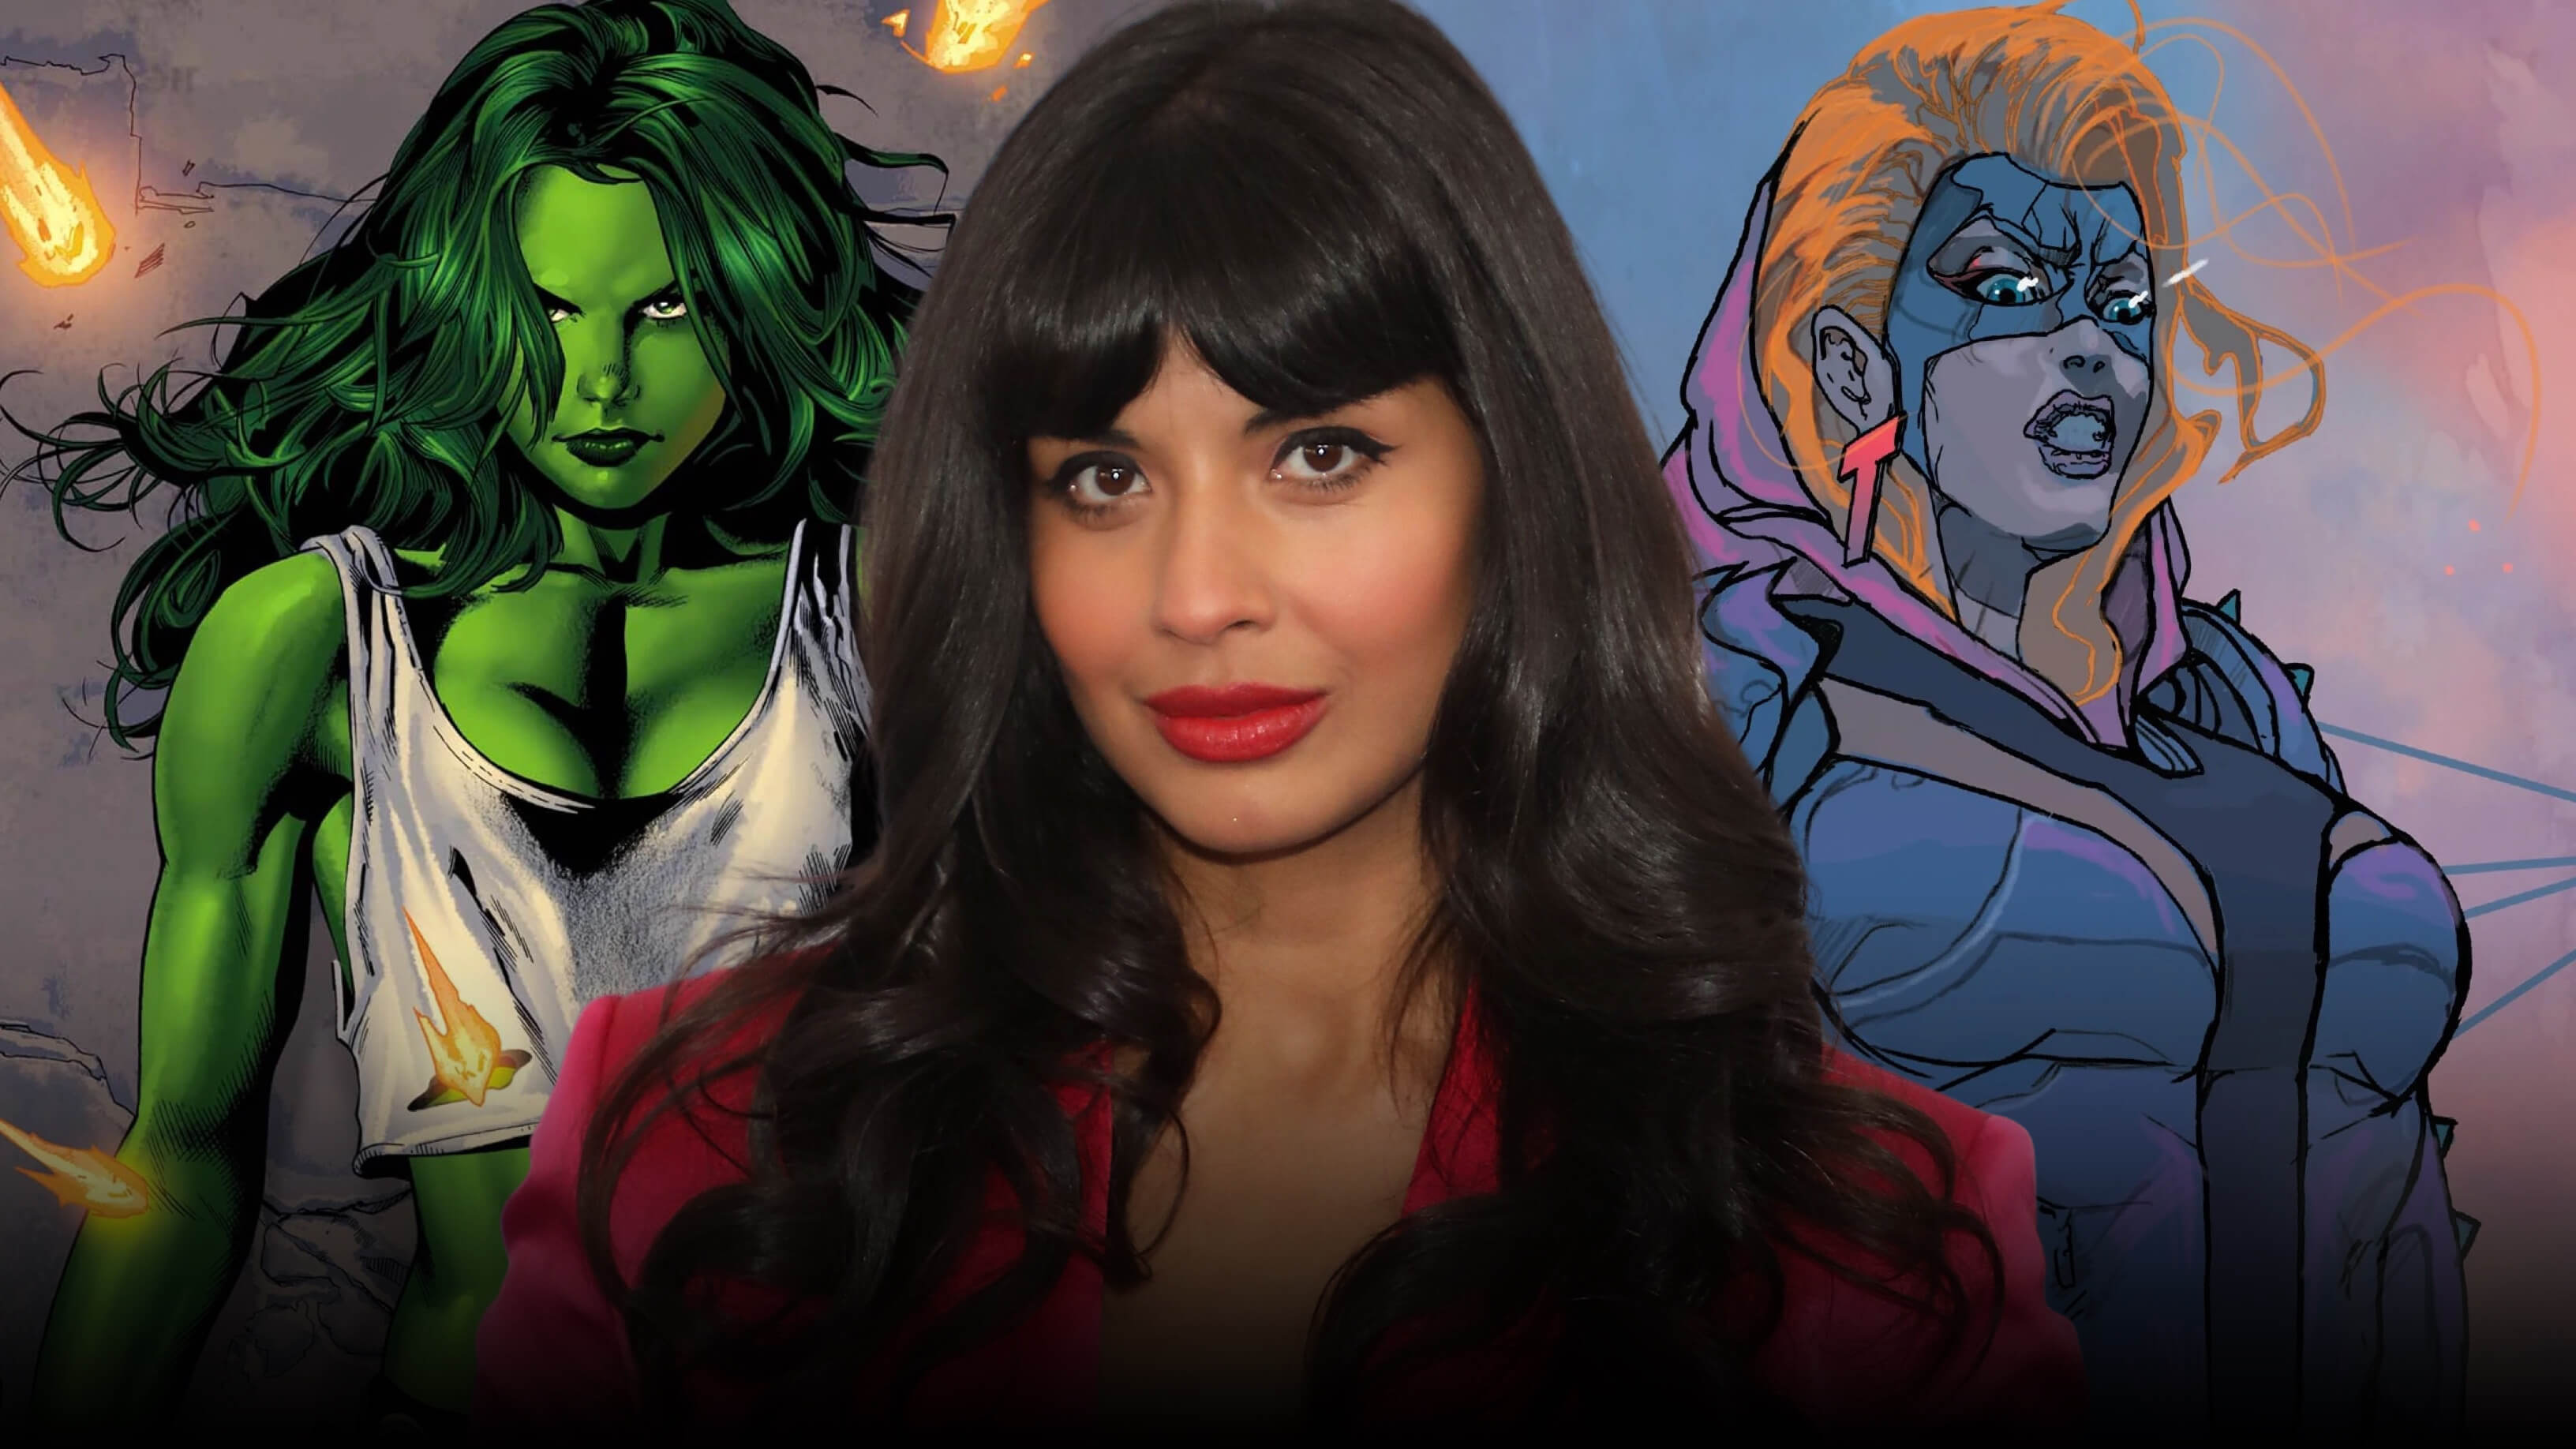 Rumor: ‘The Good Place’ Star Jameela Jamil Joins Marvel’s ‘She-Hulk’